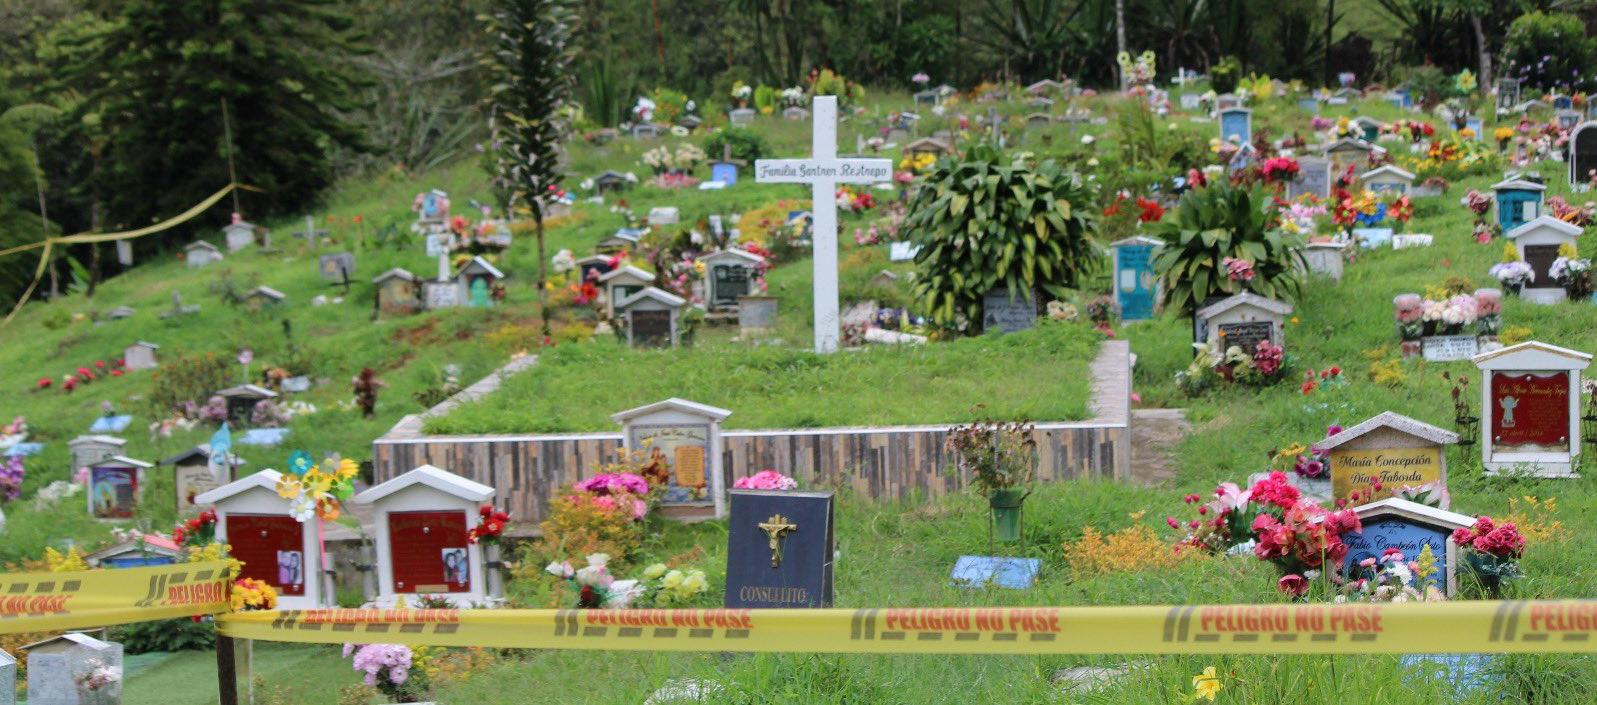 Cementerio en Riosucio.